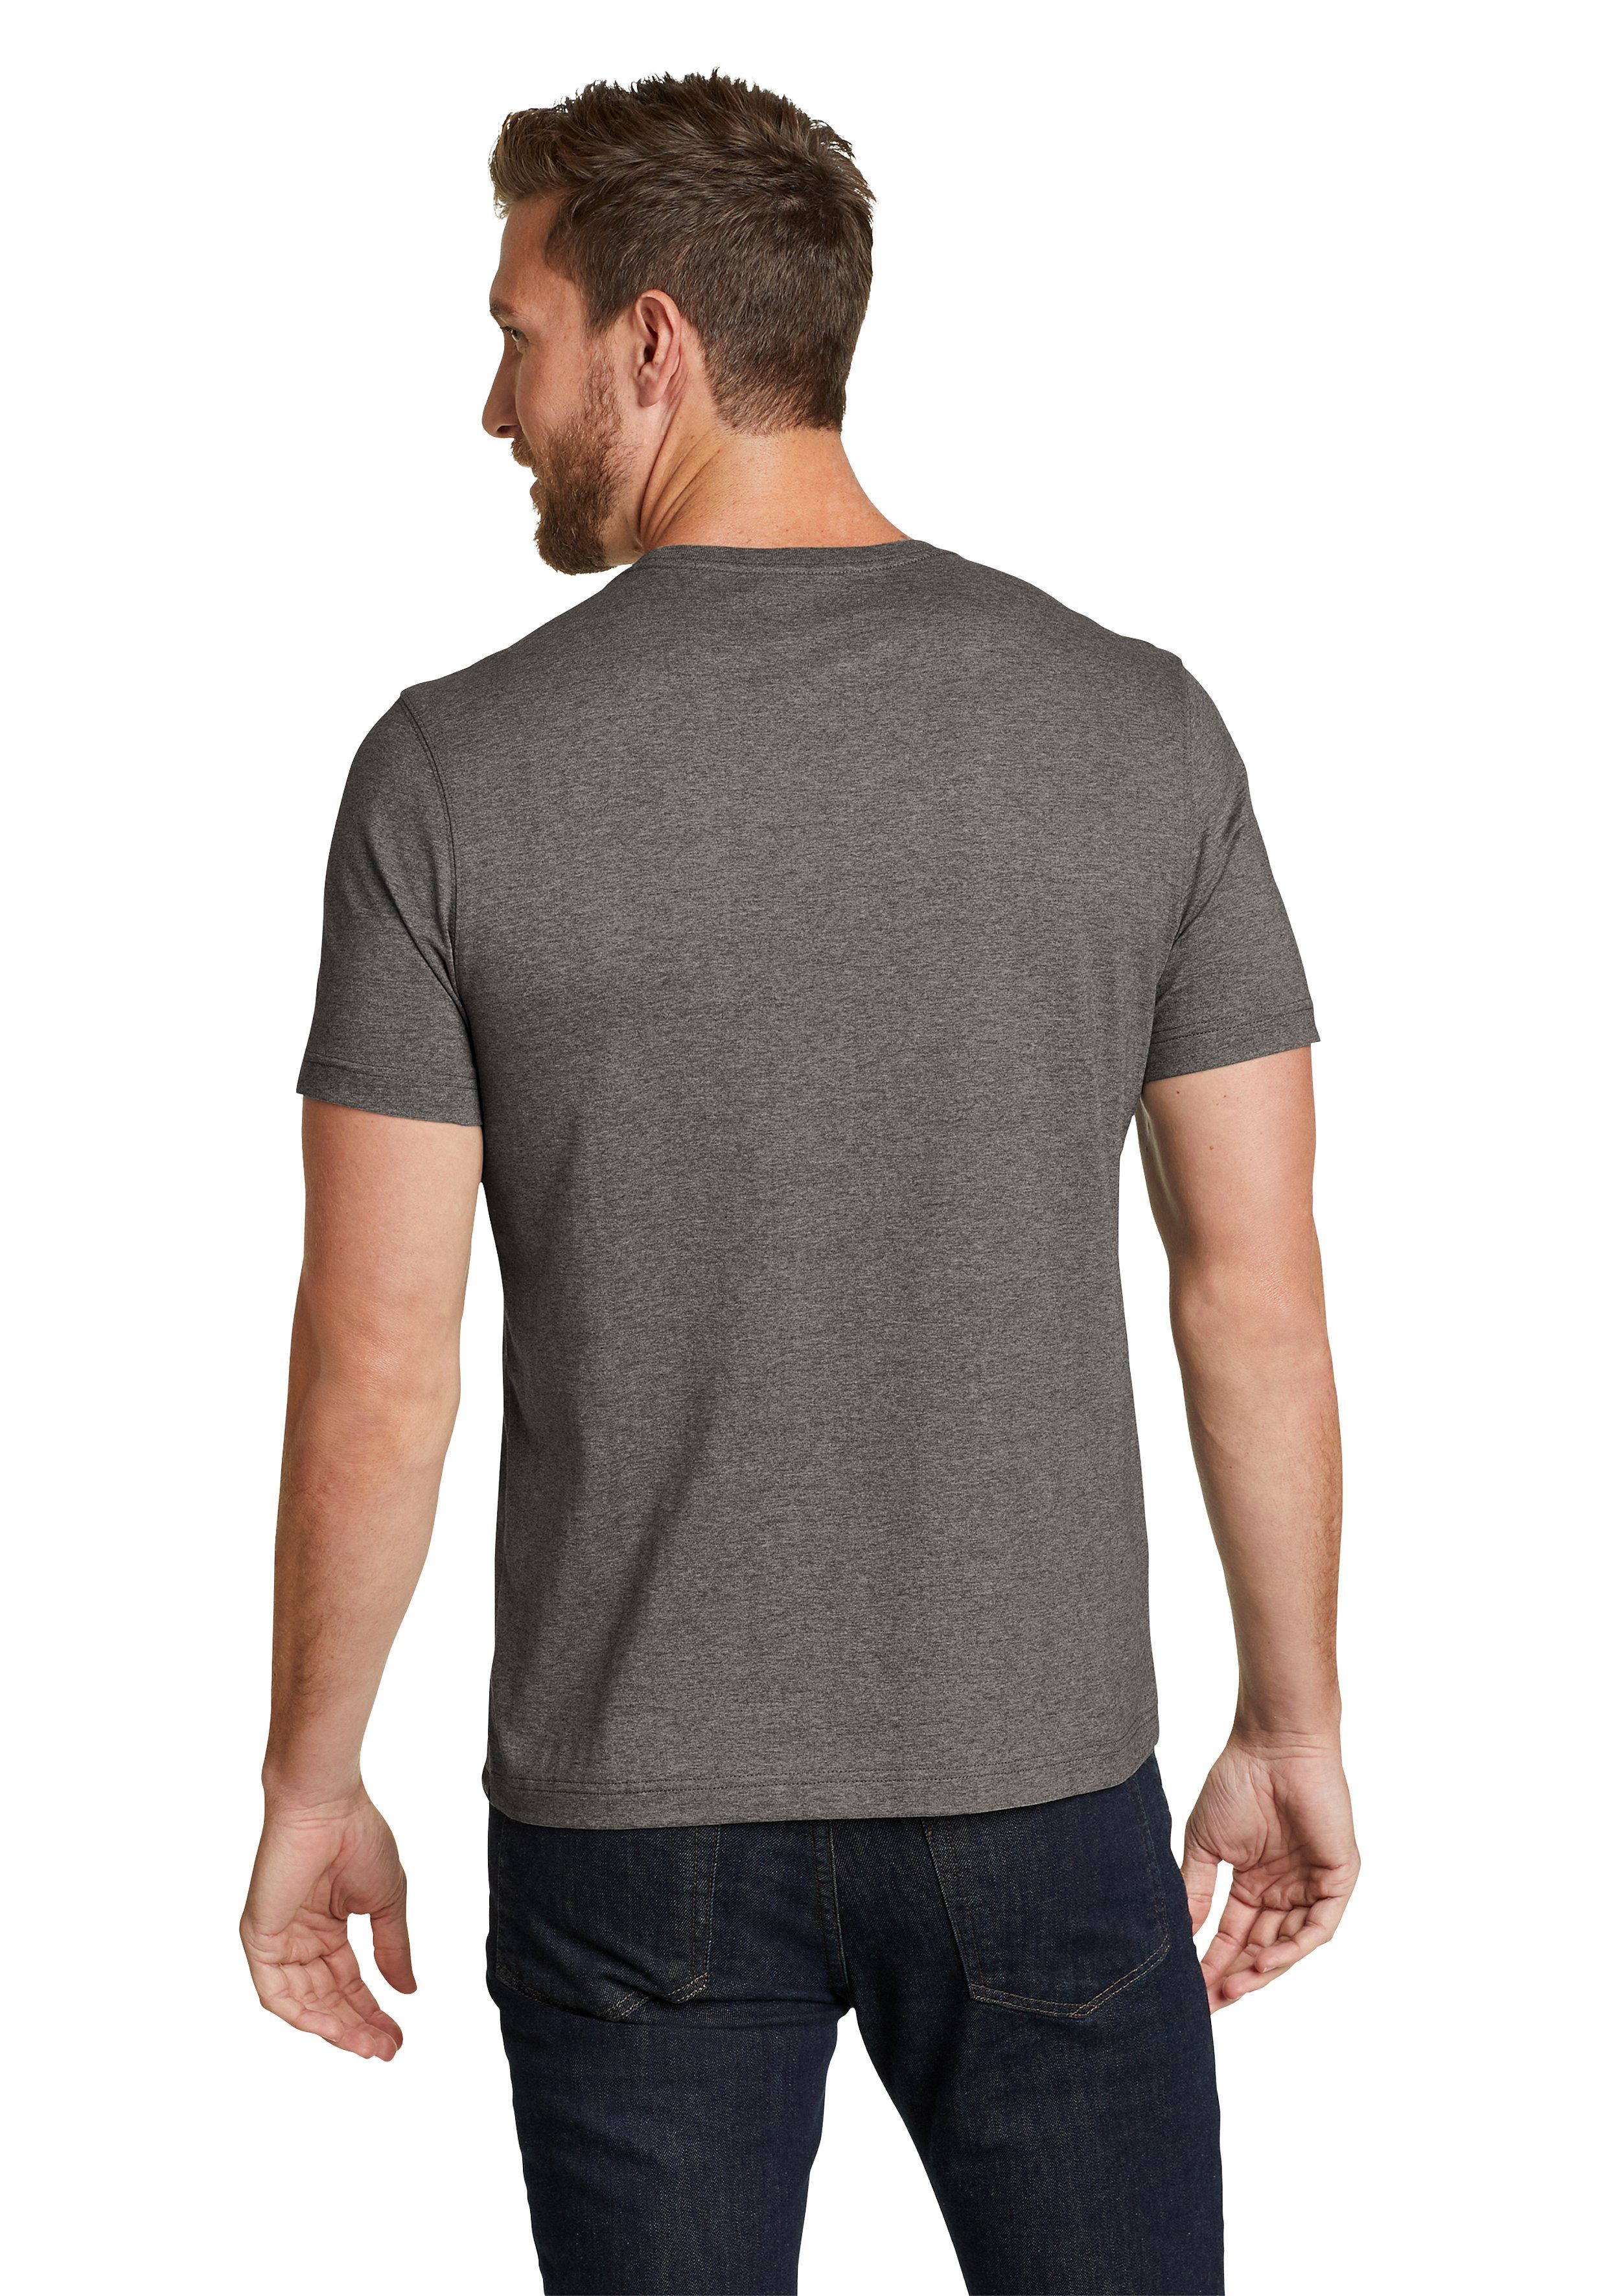 T-Shirt Legend Baumwolle Bauer Eddie Shirt Dunkle - - Slim 100% fit Wash meliert Kohle